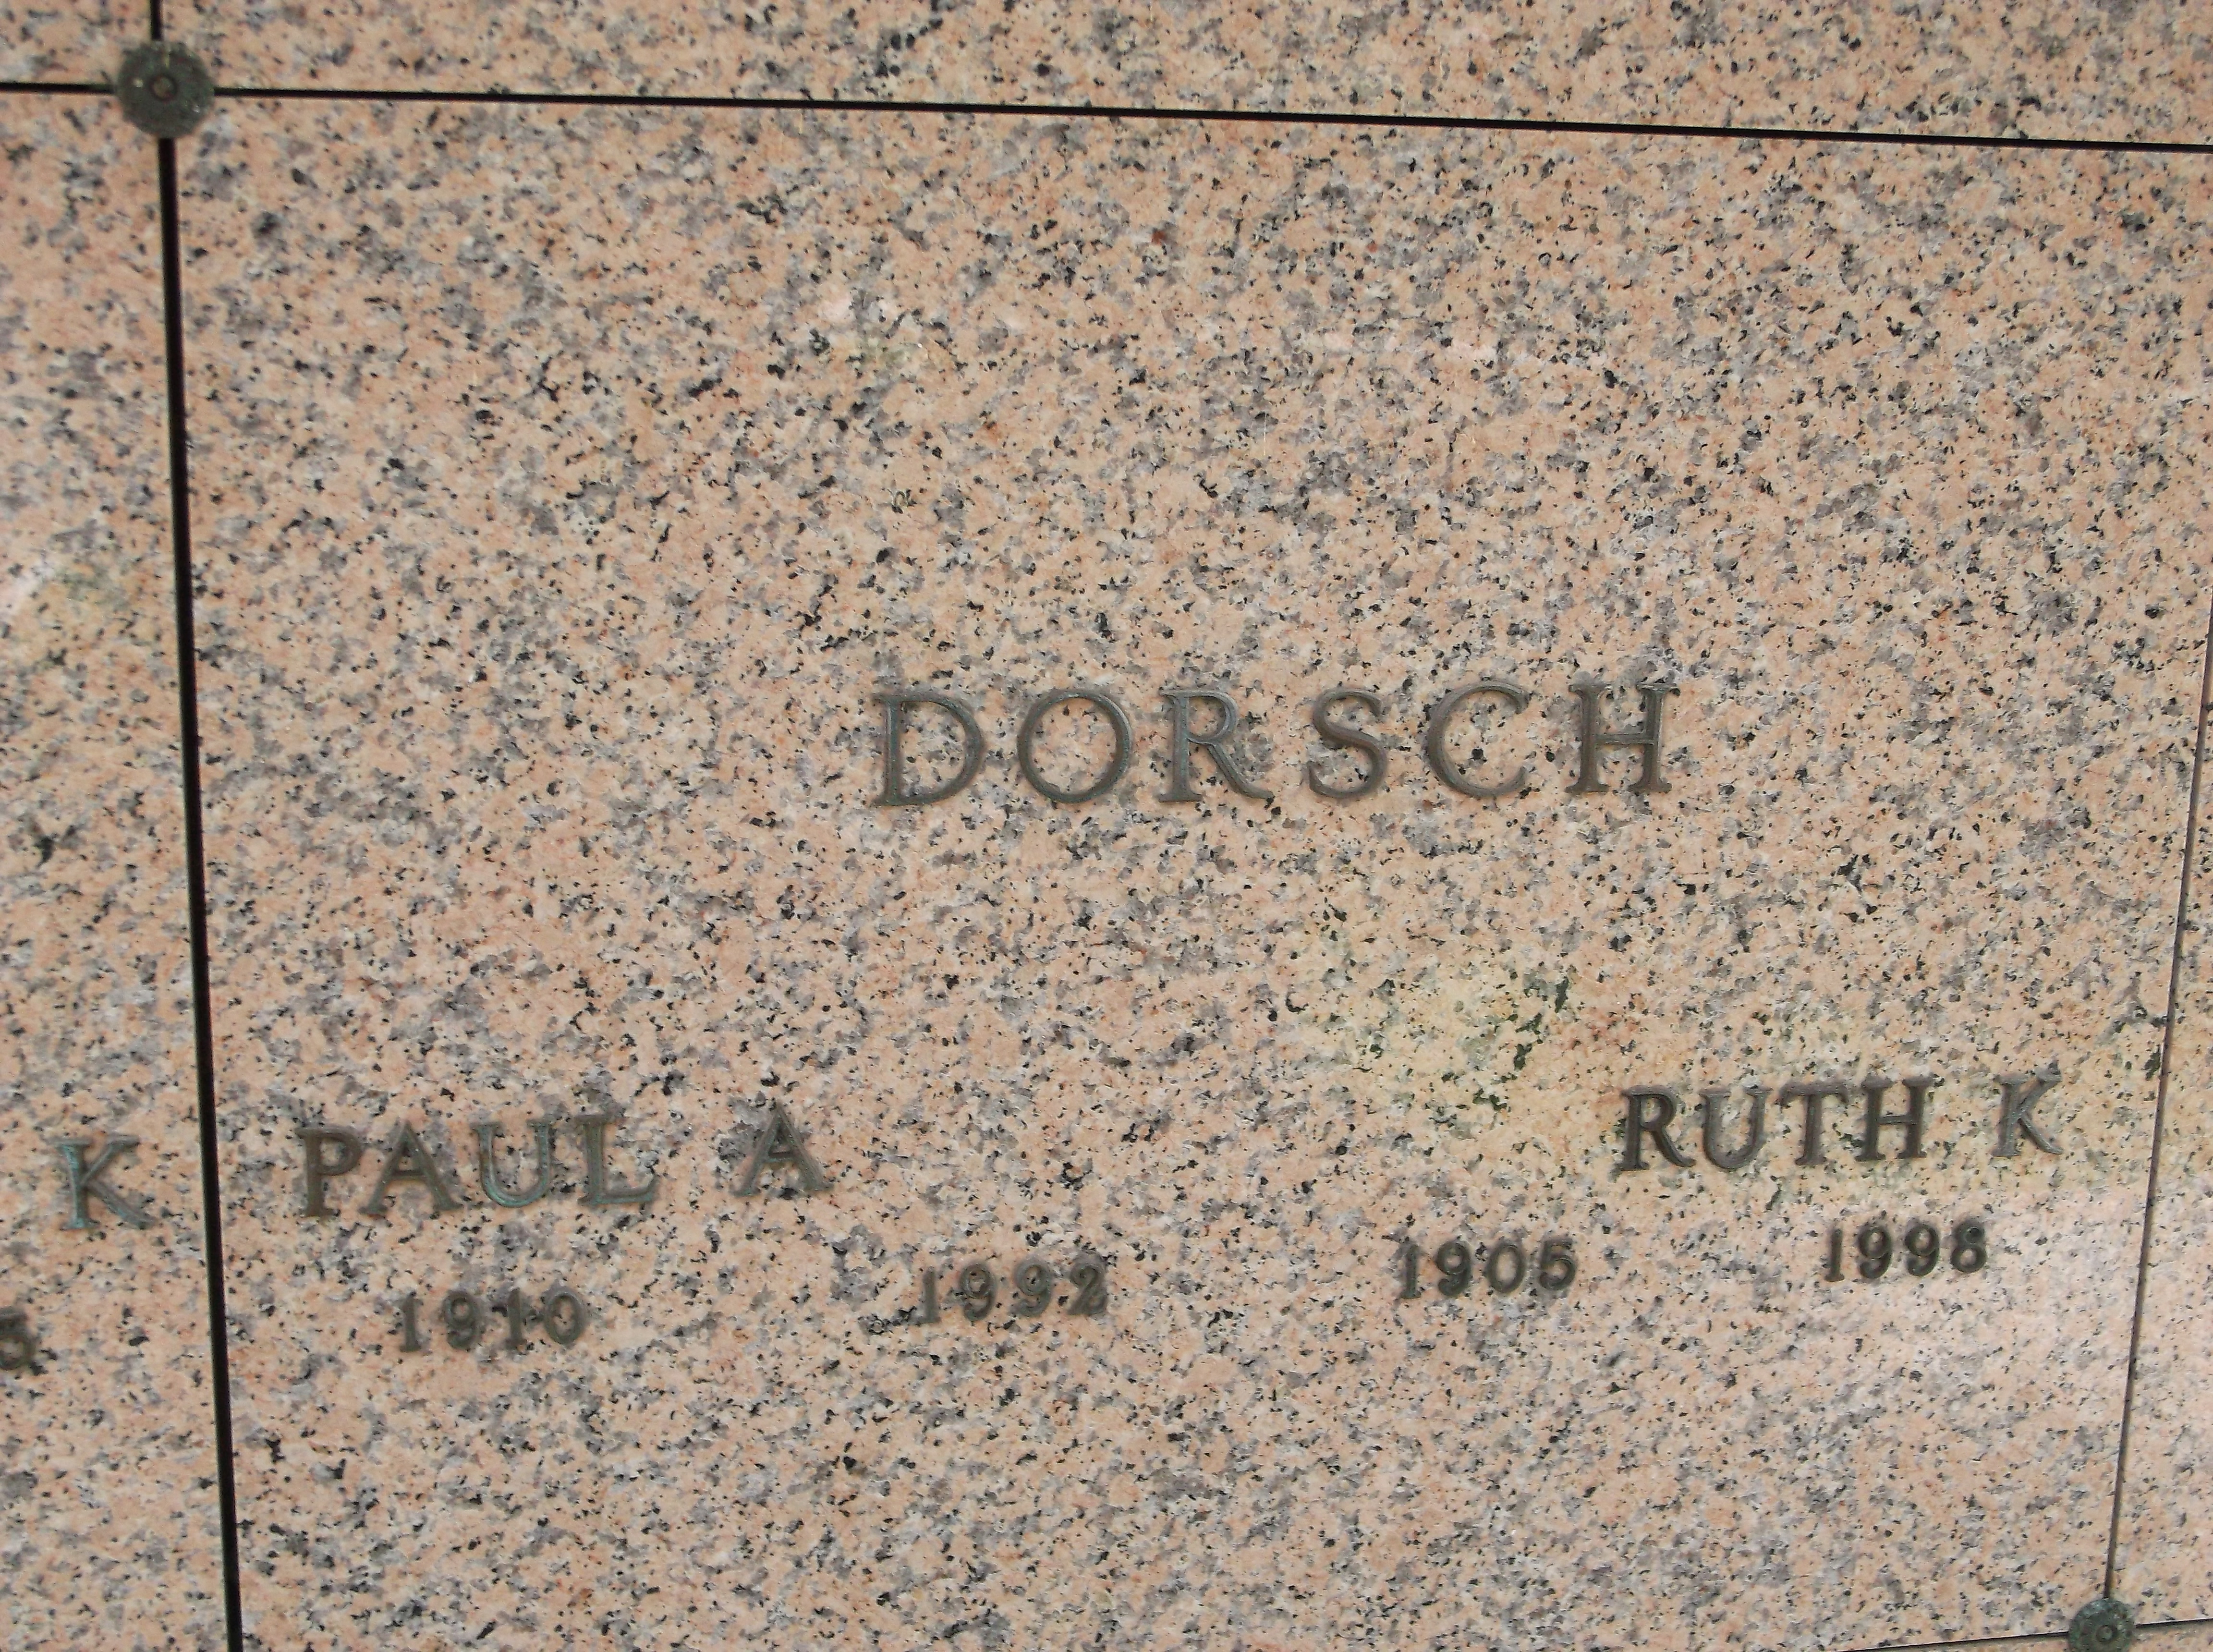 Ruth K Dorsch